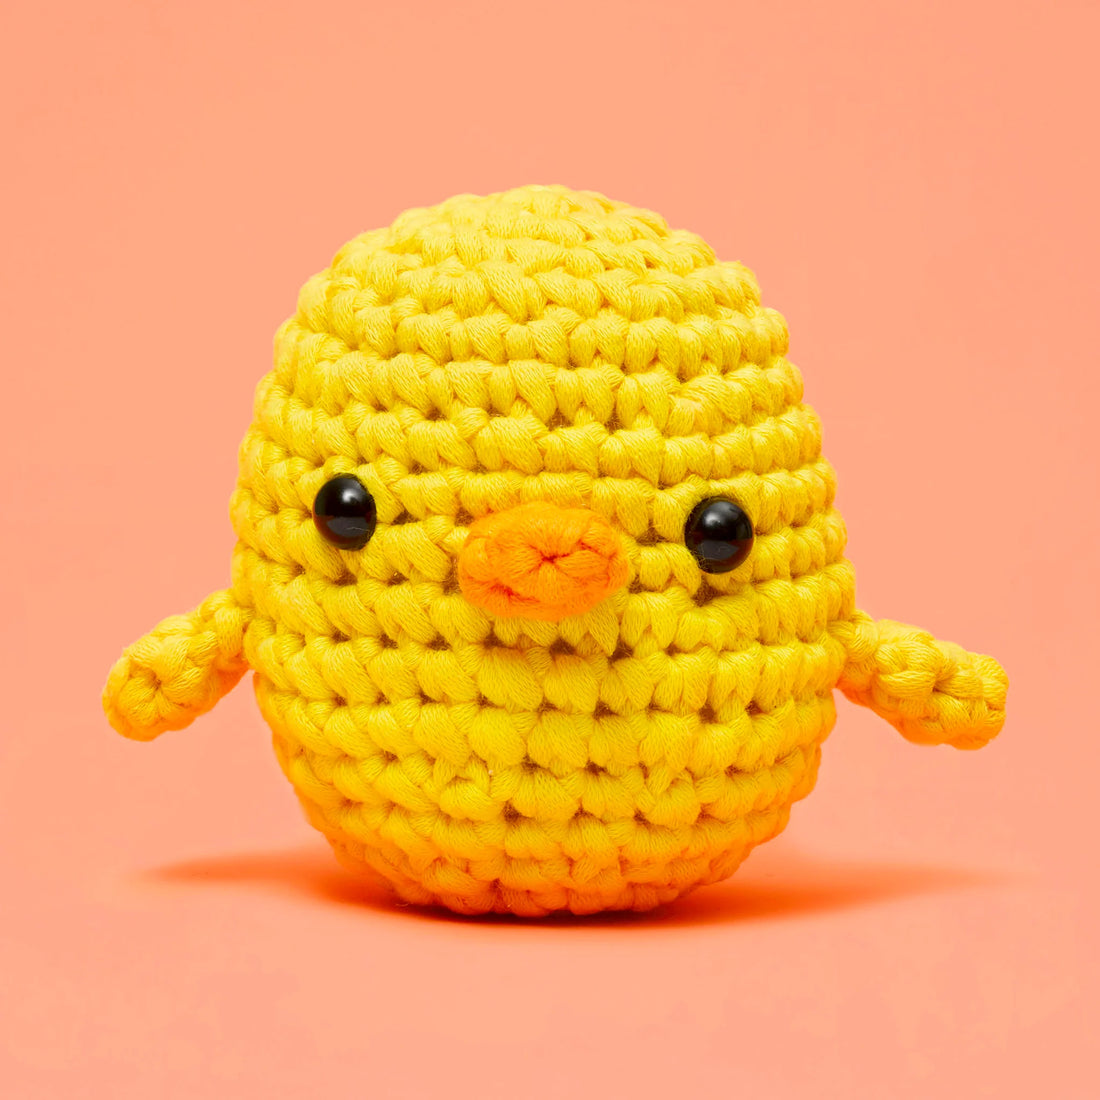 Kiki the Chick Beginner Crochet Kit Preview #2